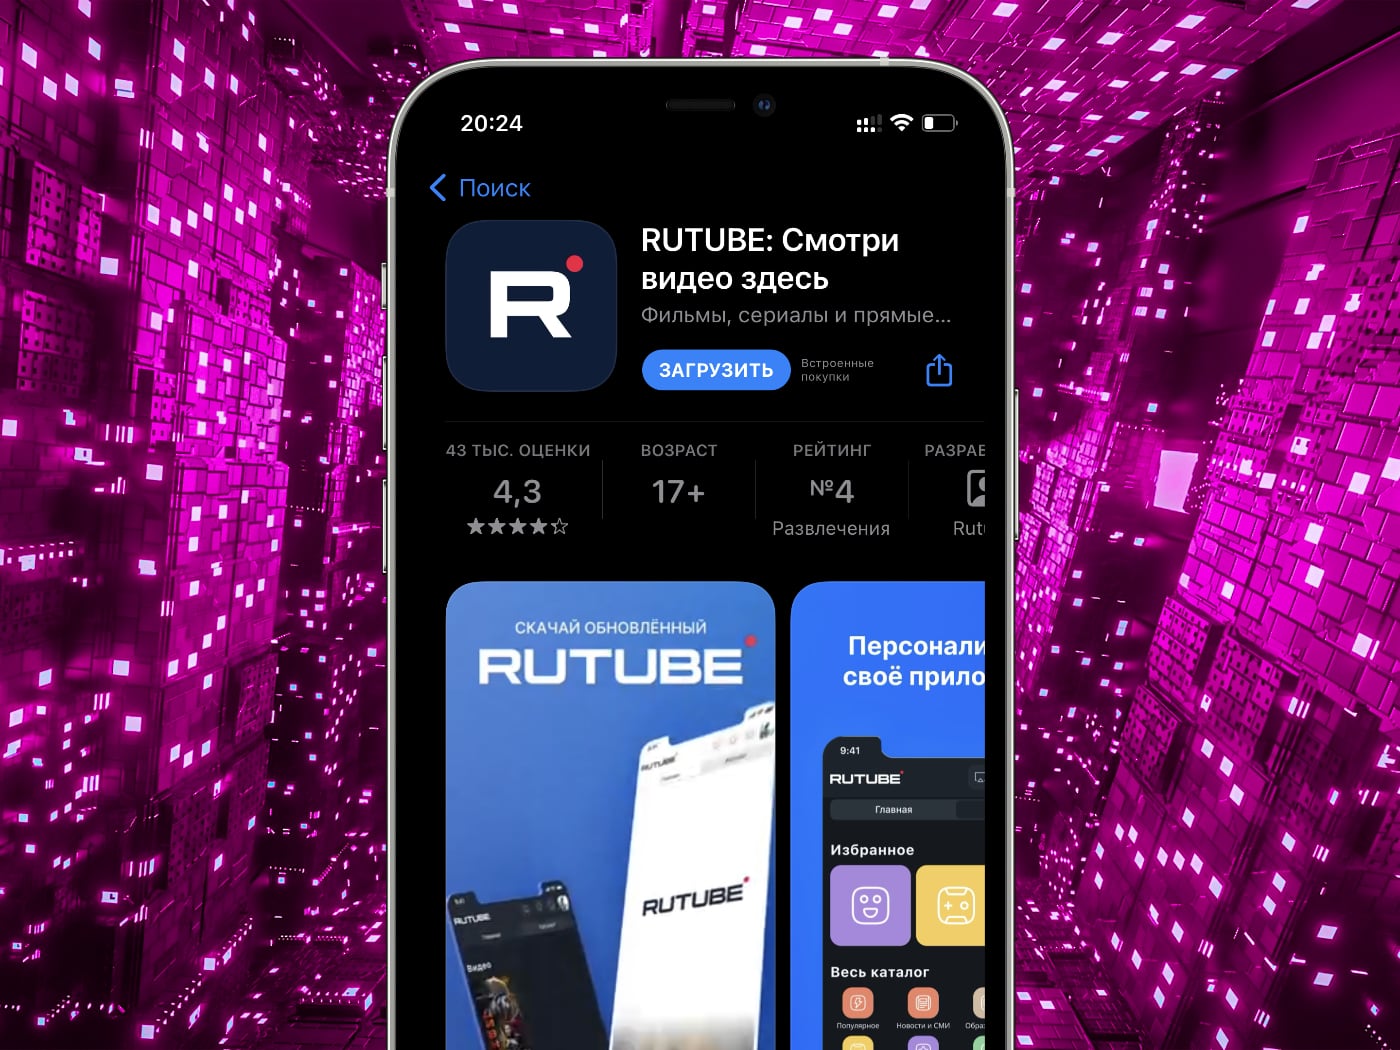 Rutube удалила свое приложение из всех App Store, кроме российского